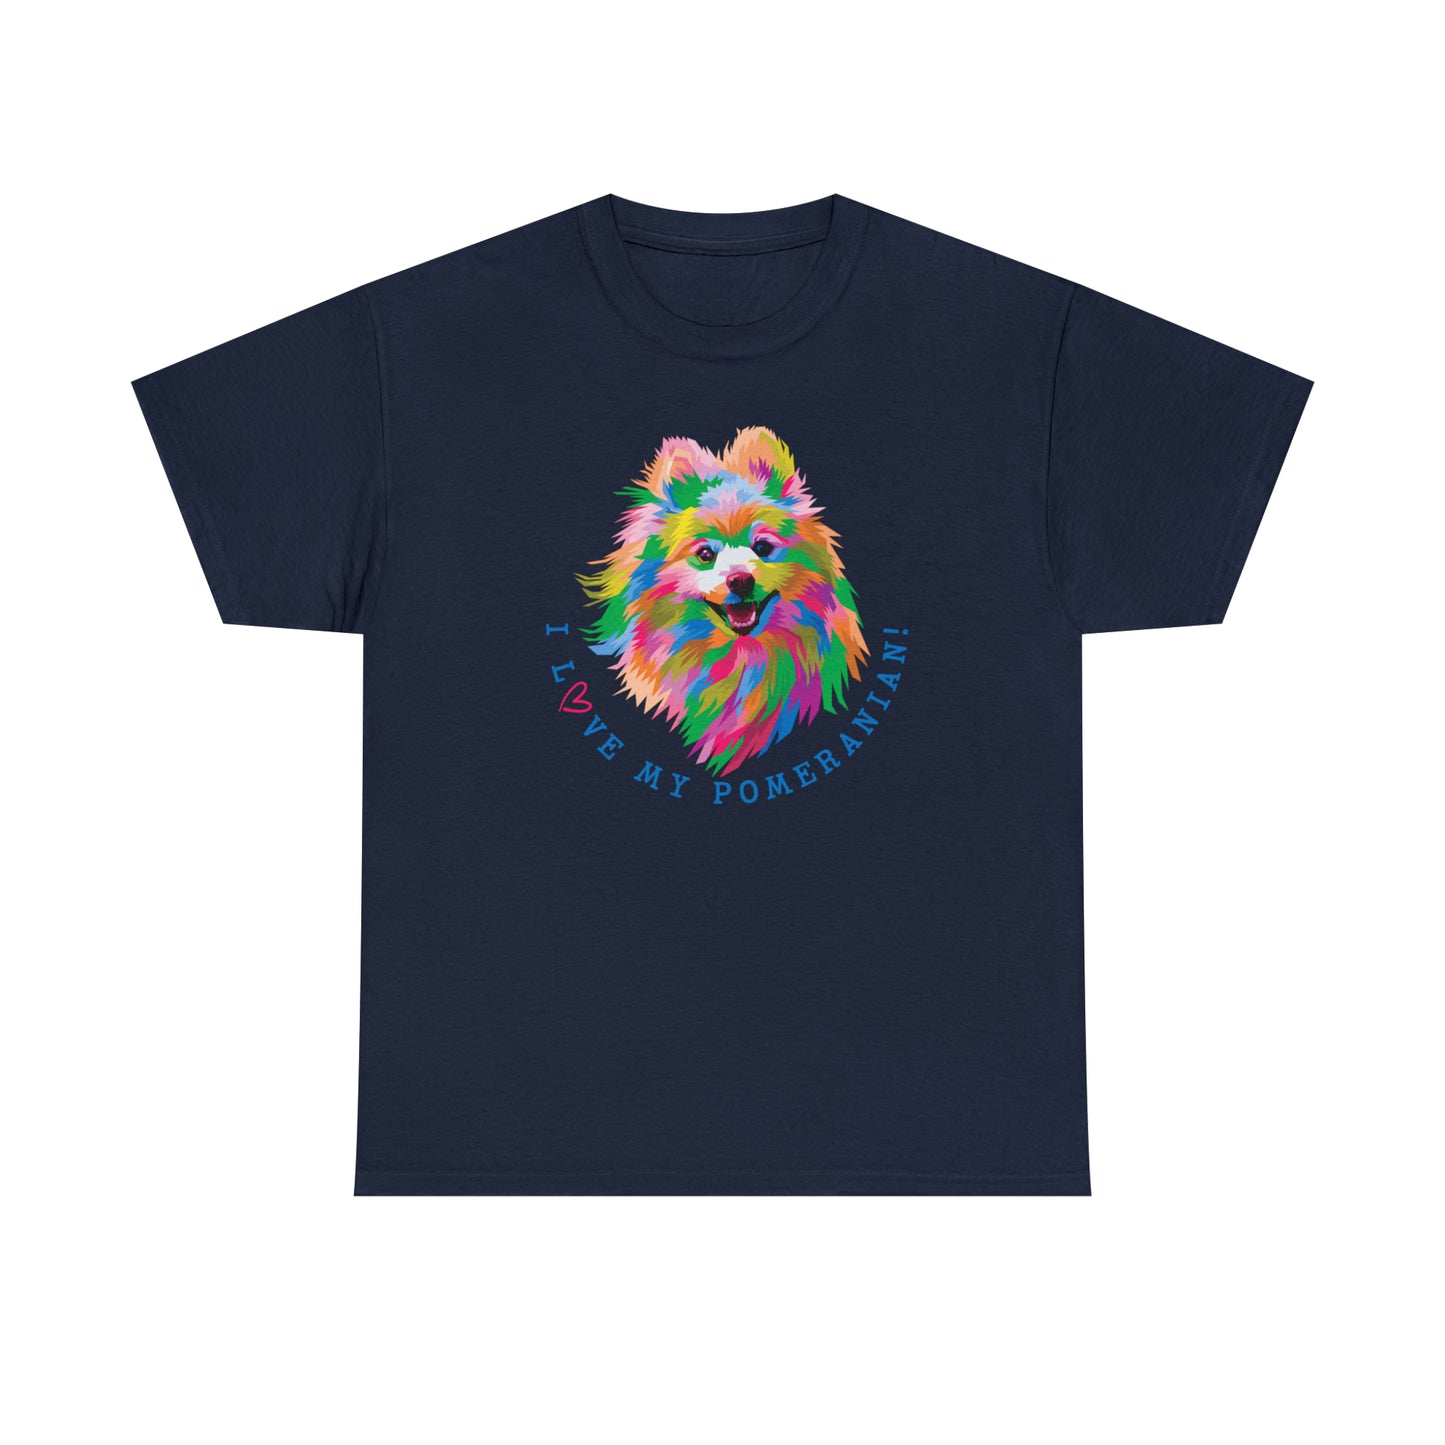 Pomeranian T-Shirt For Pom Lover TShirt For Pom Mom T Shirt For Favorite Dog Breed Shirt For Dog Lover Tee For Pomeranian Lover Gift